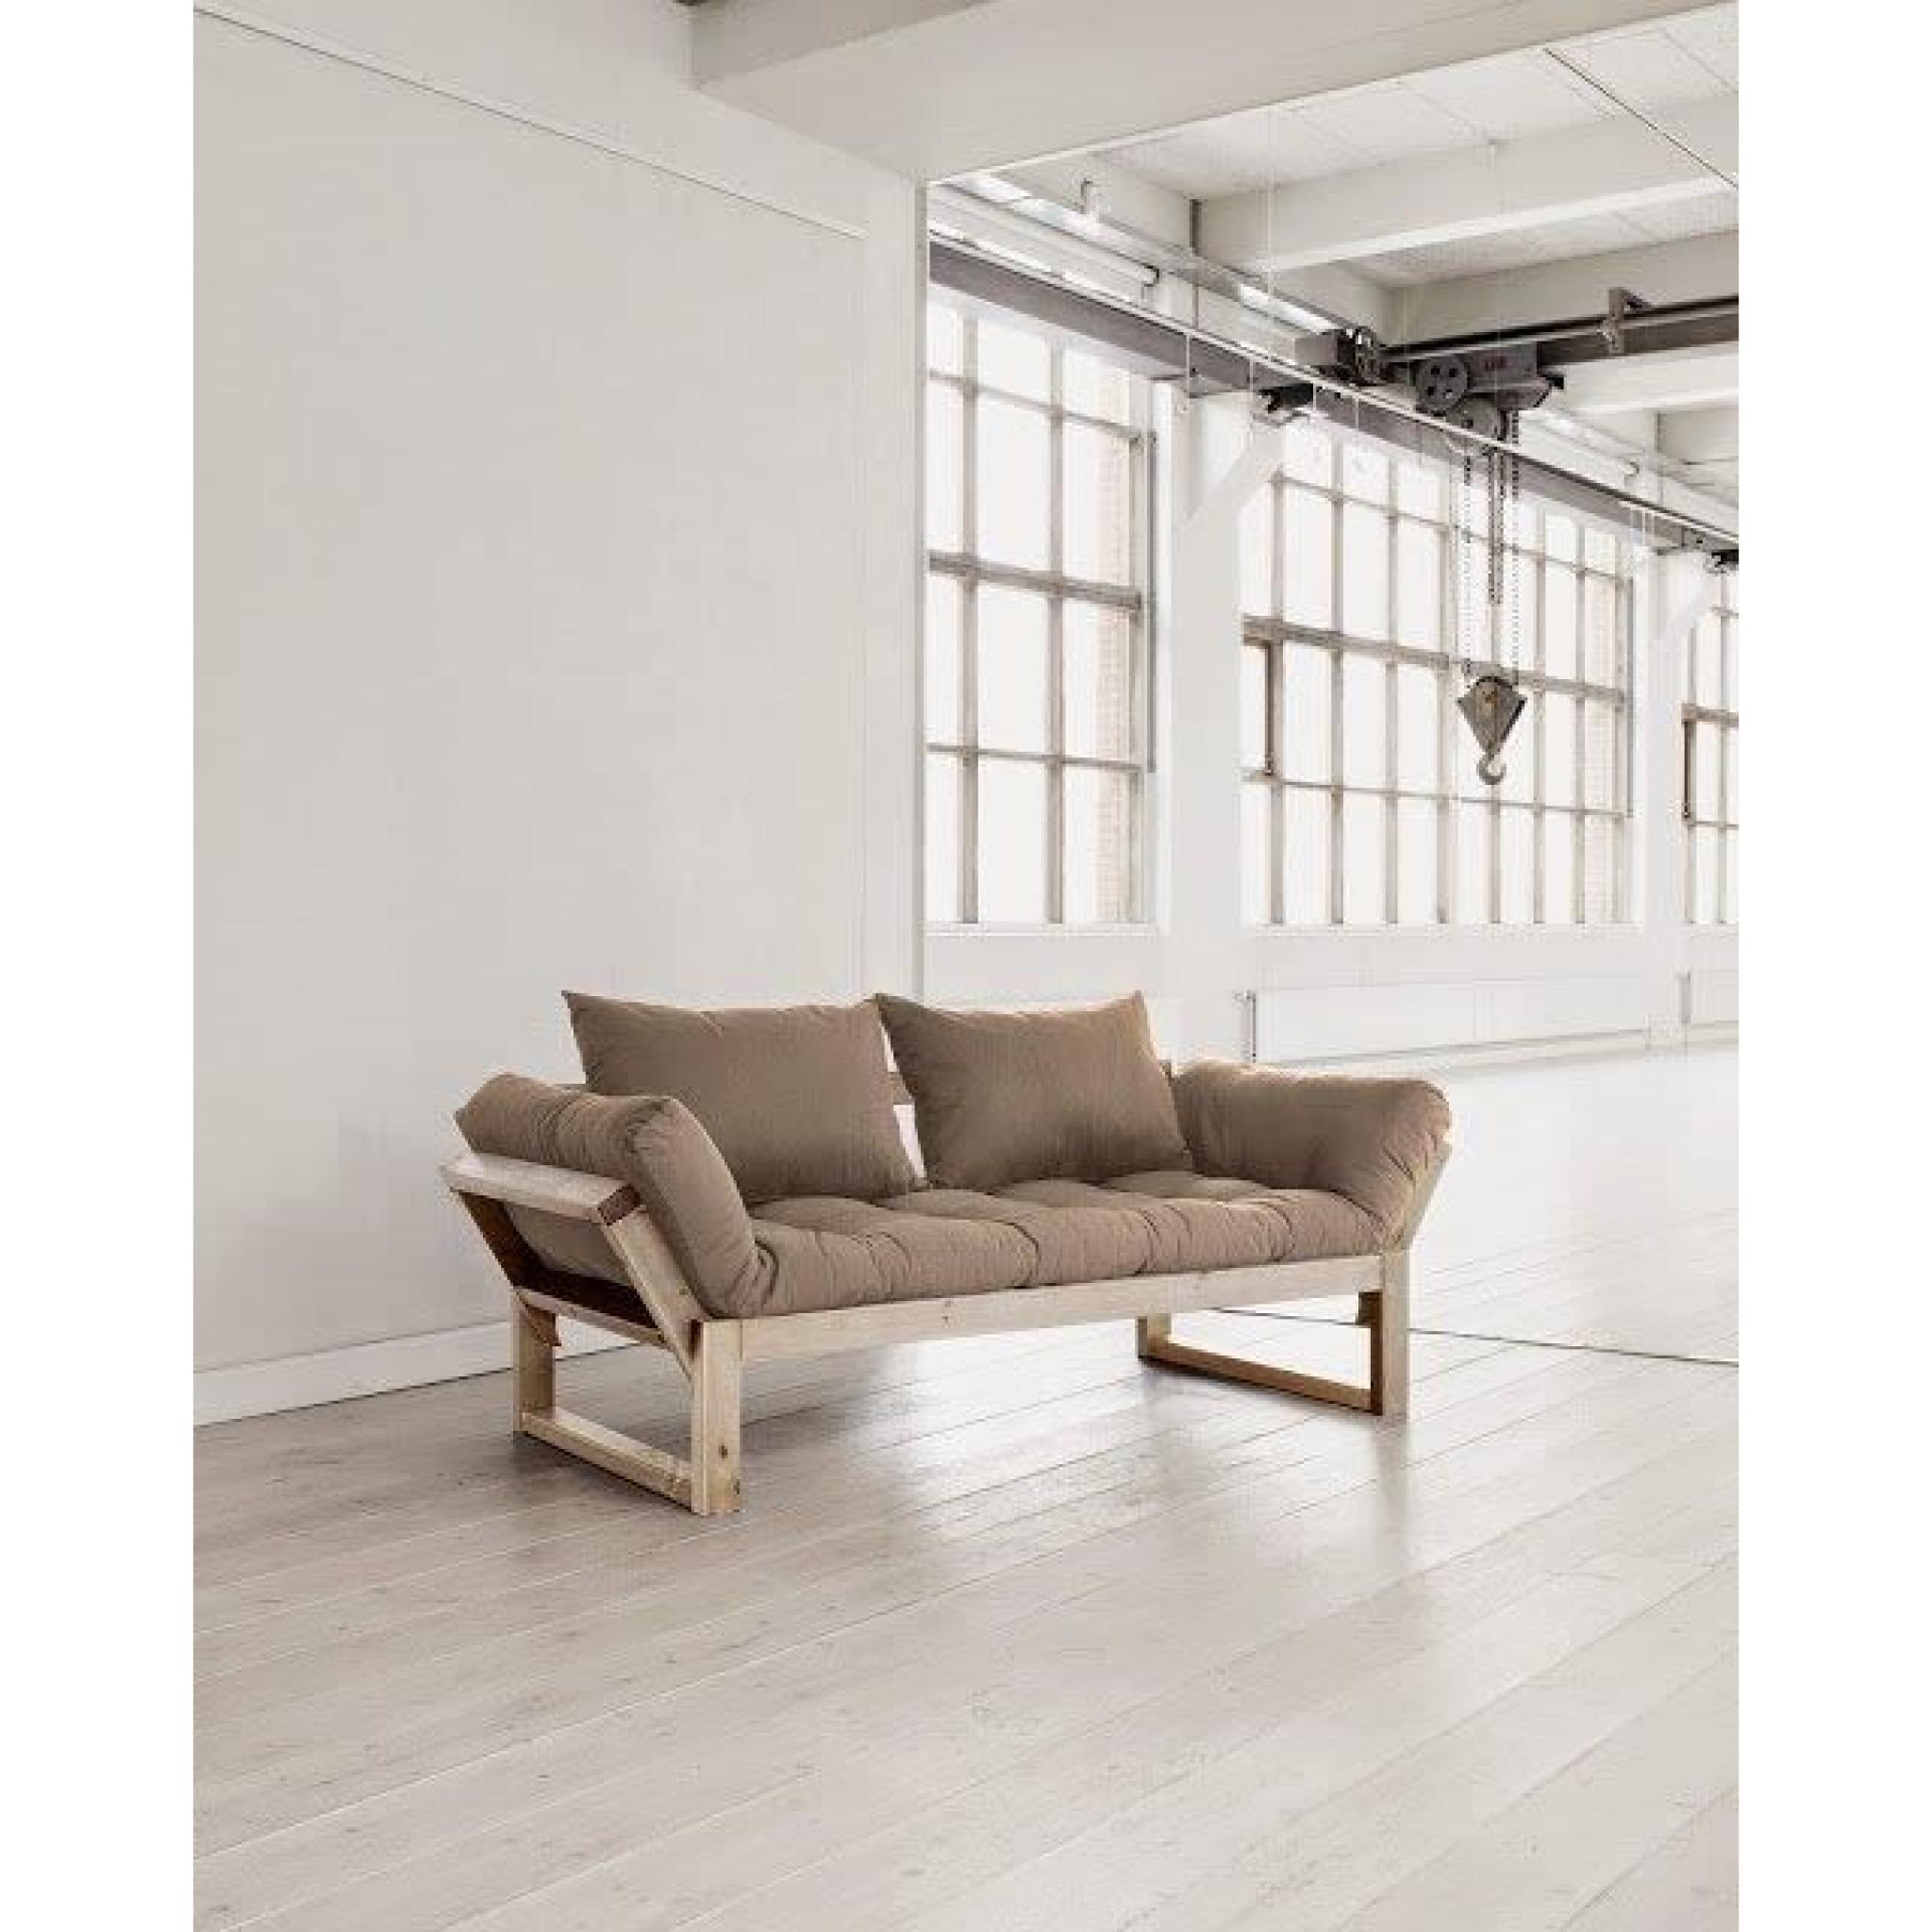 Banquette méridienne style scandinave futon taupe EDGE couchage 75*200cm pas cher